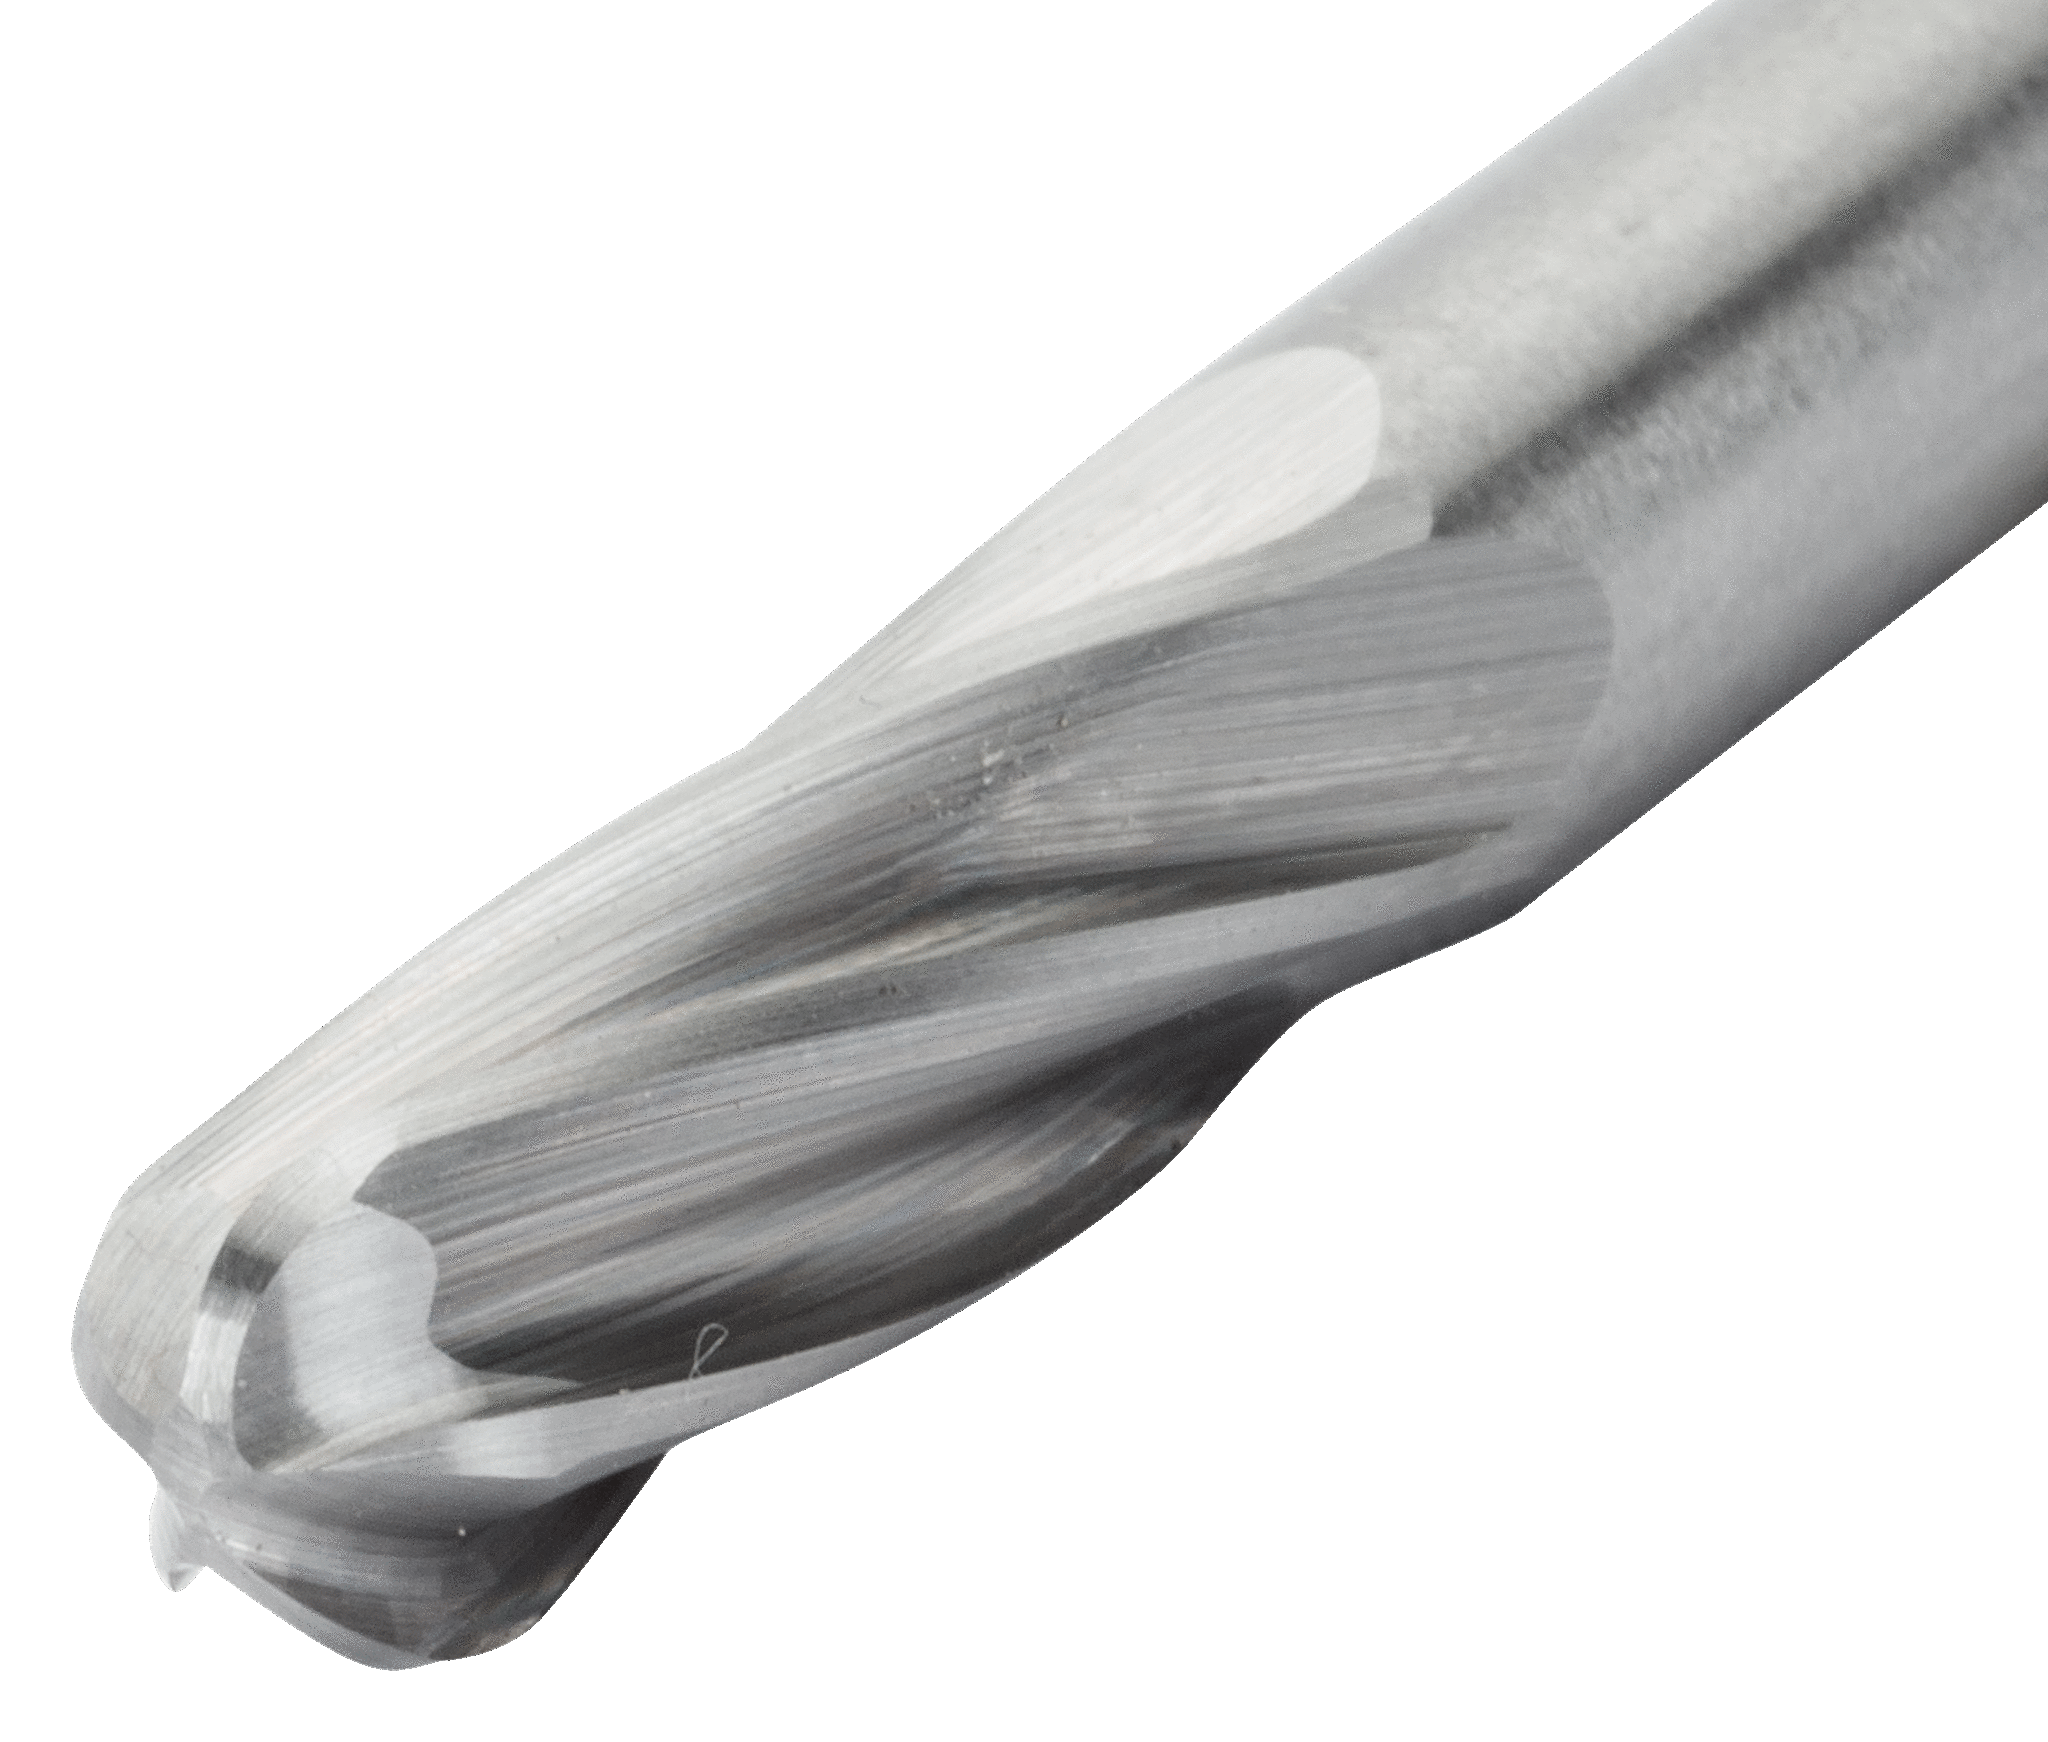 картинка Твердосплавные борфрезы с цилиндрической скругленной головкой по алюминию BAHCO C0616AL06 от магазина "Элит-инструмент"